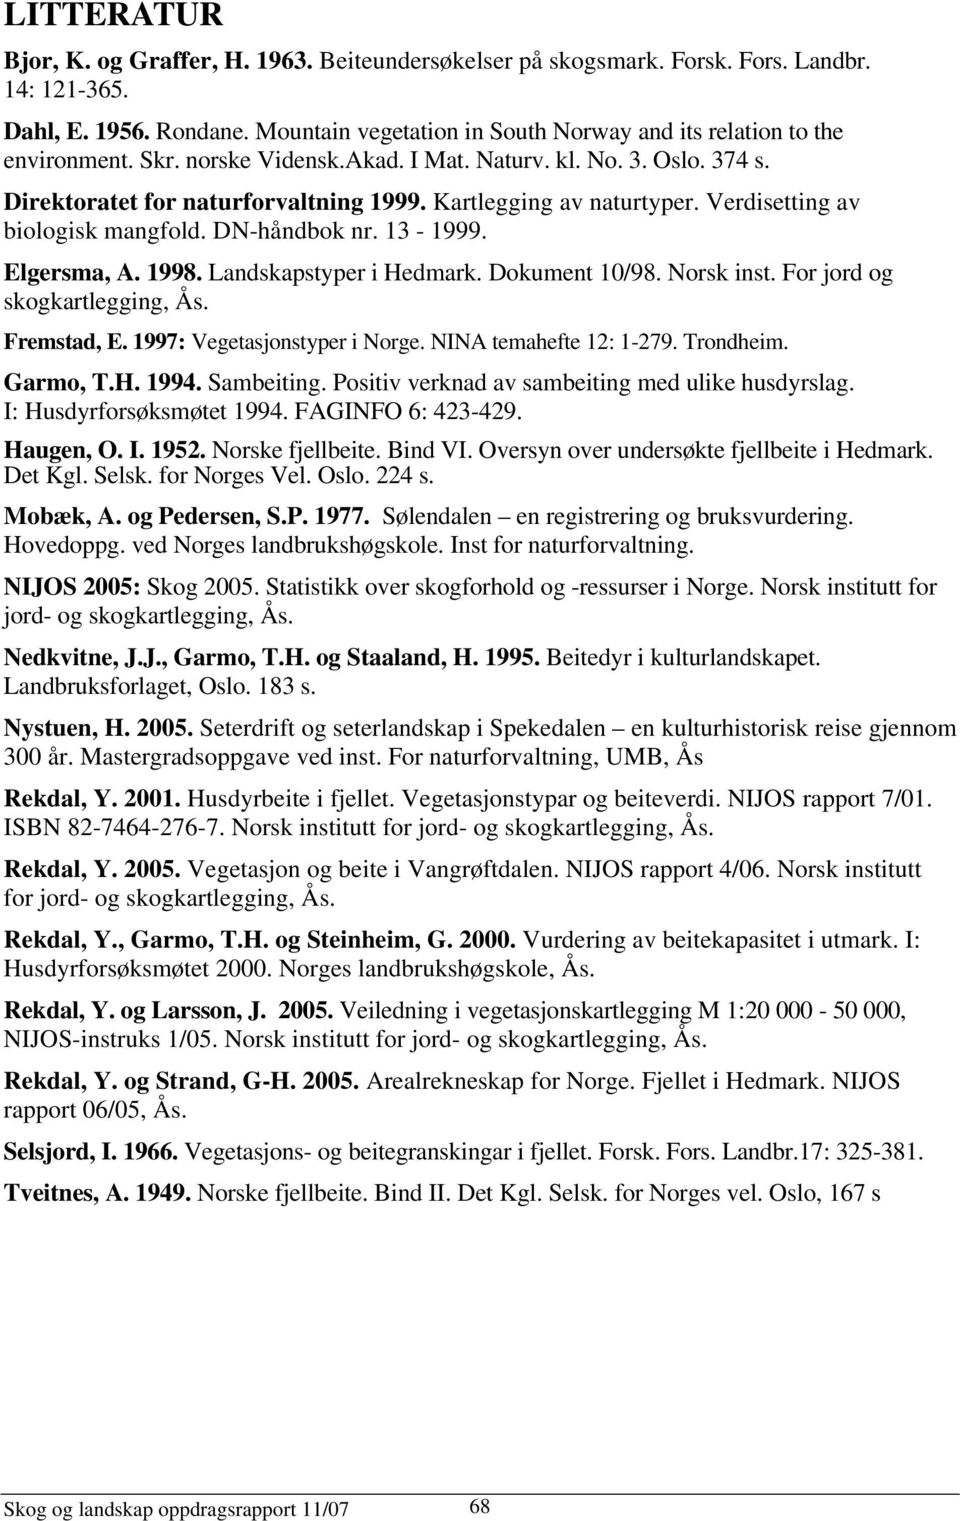 Kartlegging av naturtyper. Verdisetting av biologisk mangfold. DN-håndbok nr. 13-1999. Elgersma, A. 1998. Landskapstyper i Hedmark. Dokument 10/98. Norsk inst. For jord og skogkartlegging, Ås.